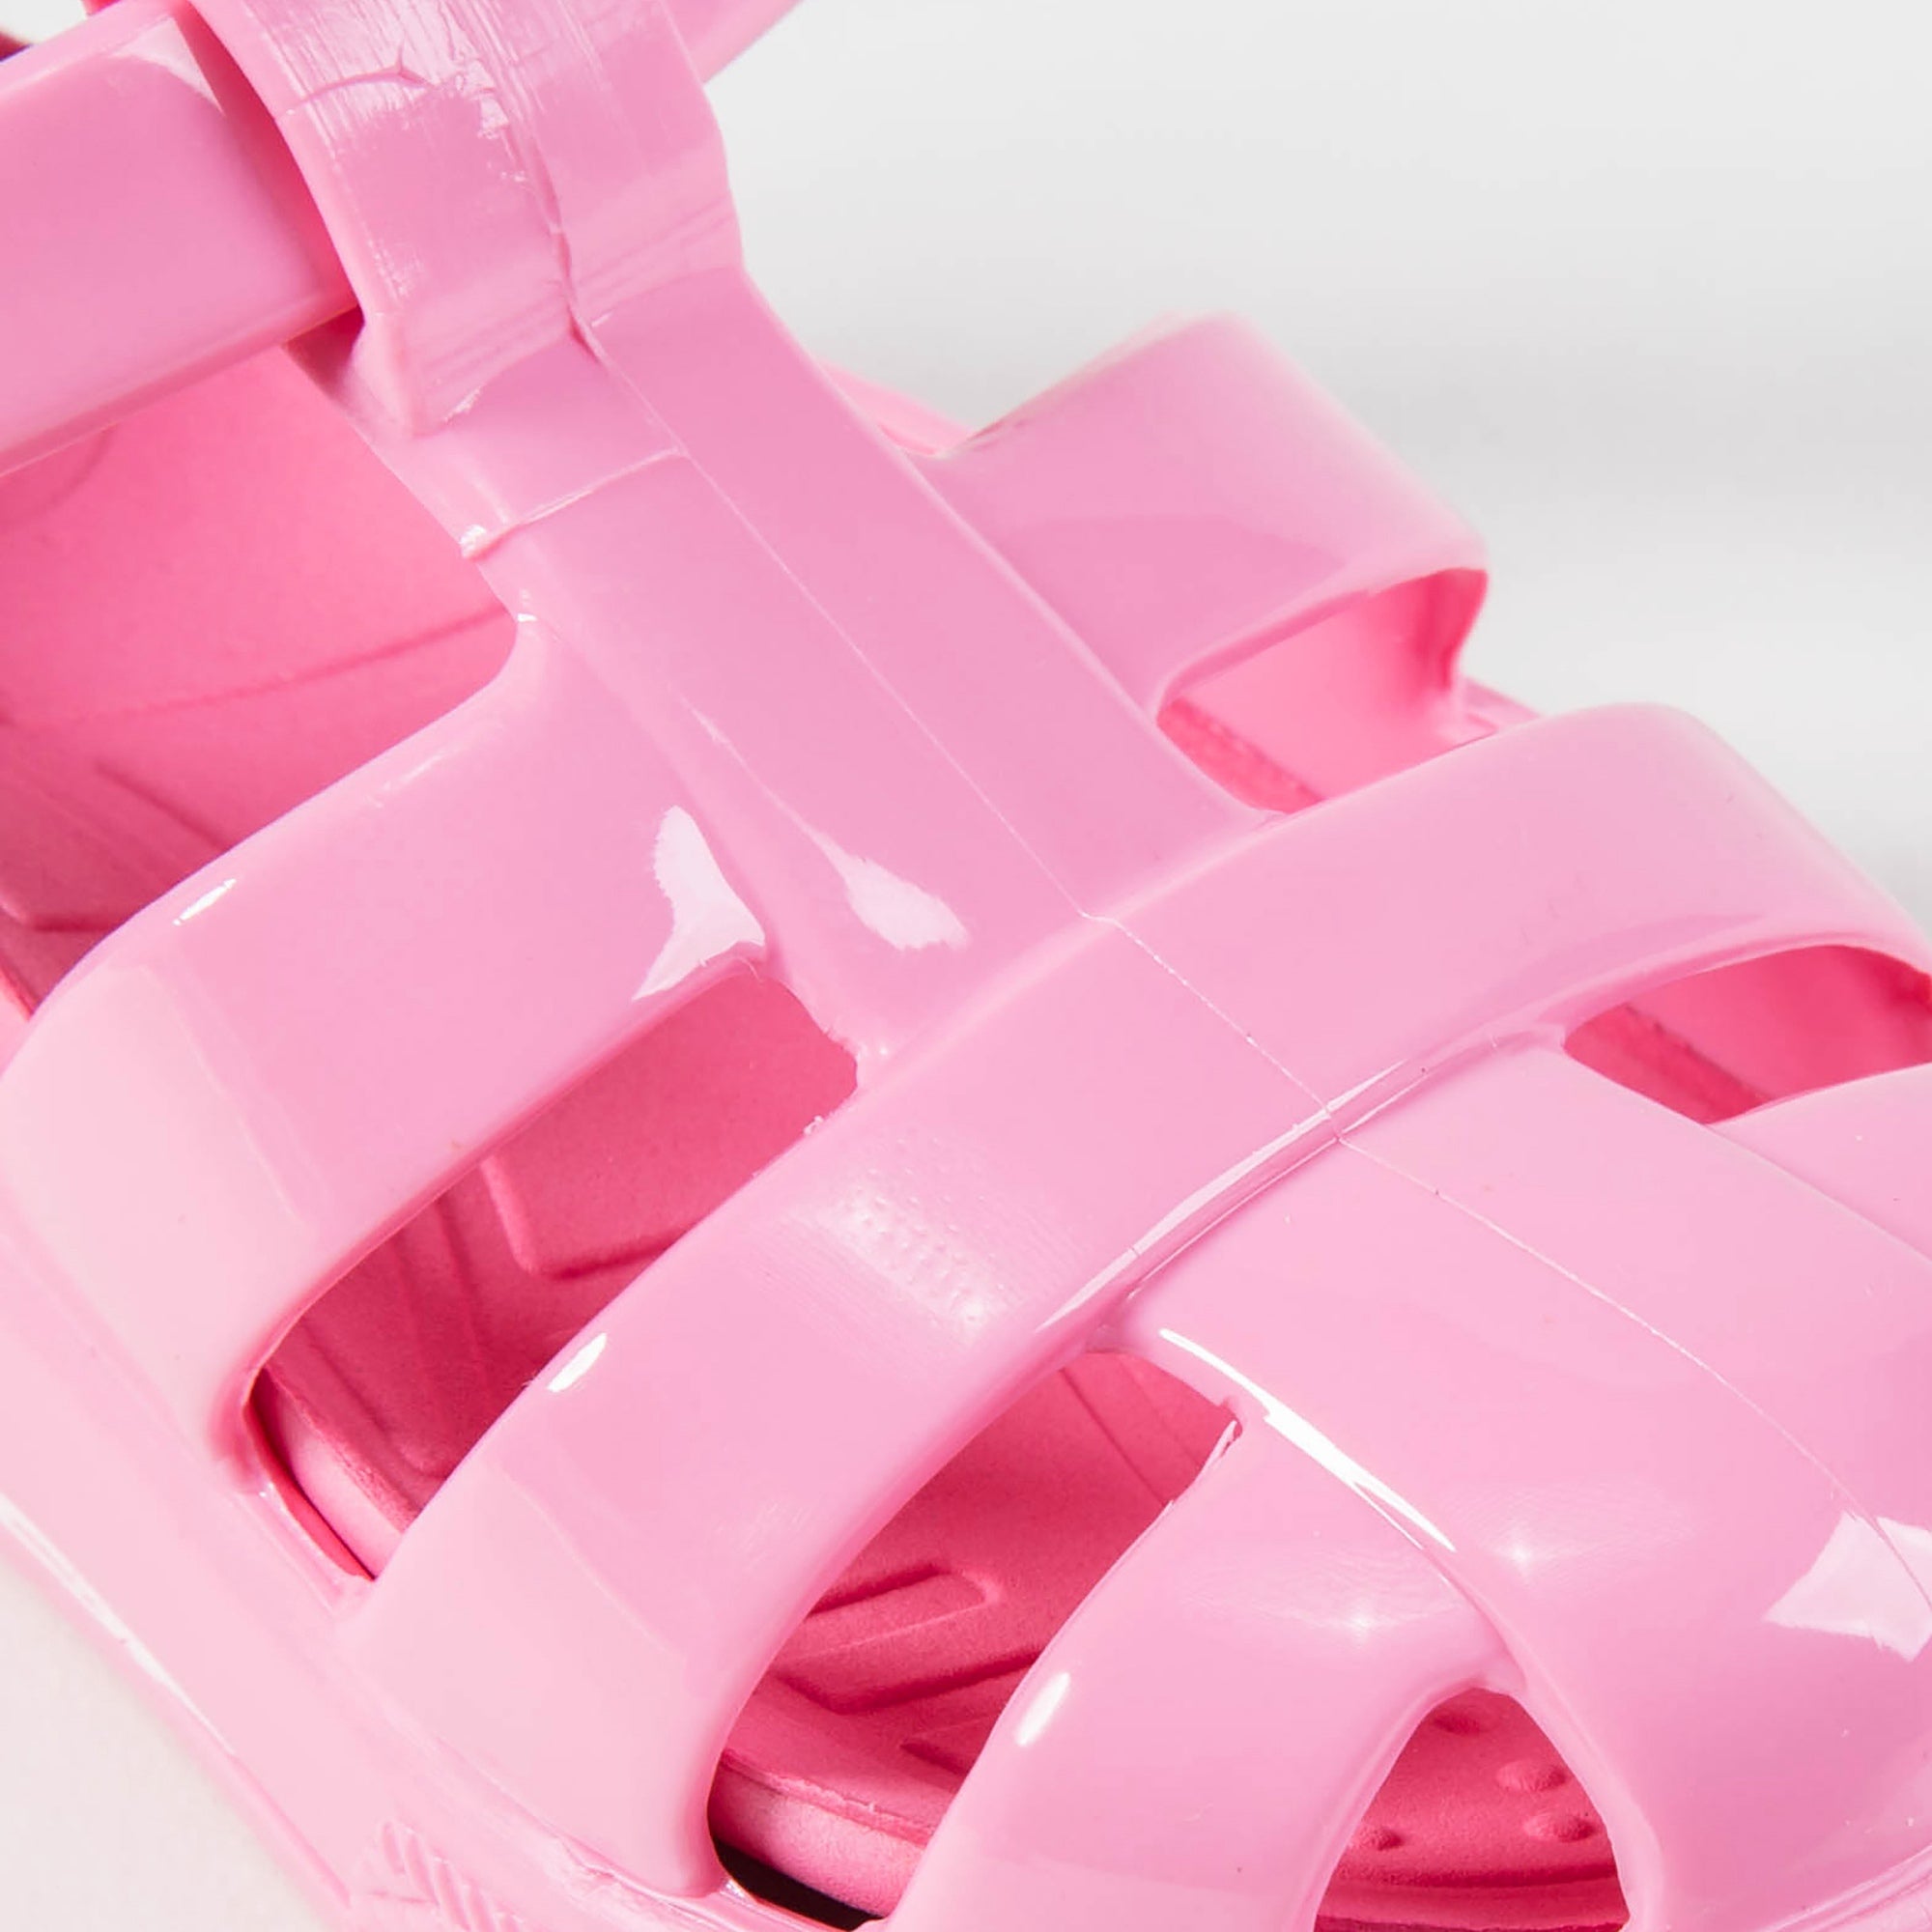 Girls Pink Sandal